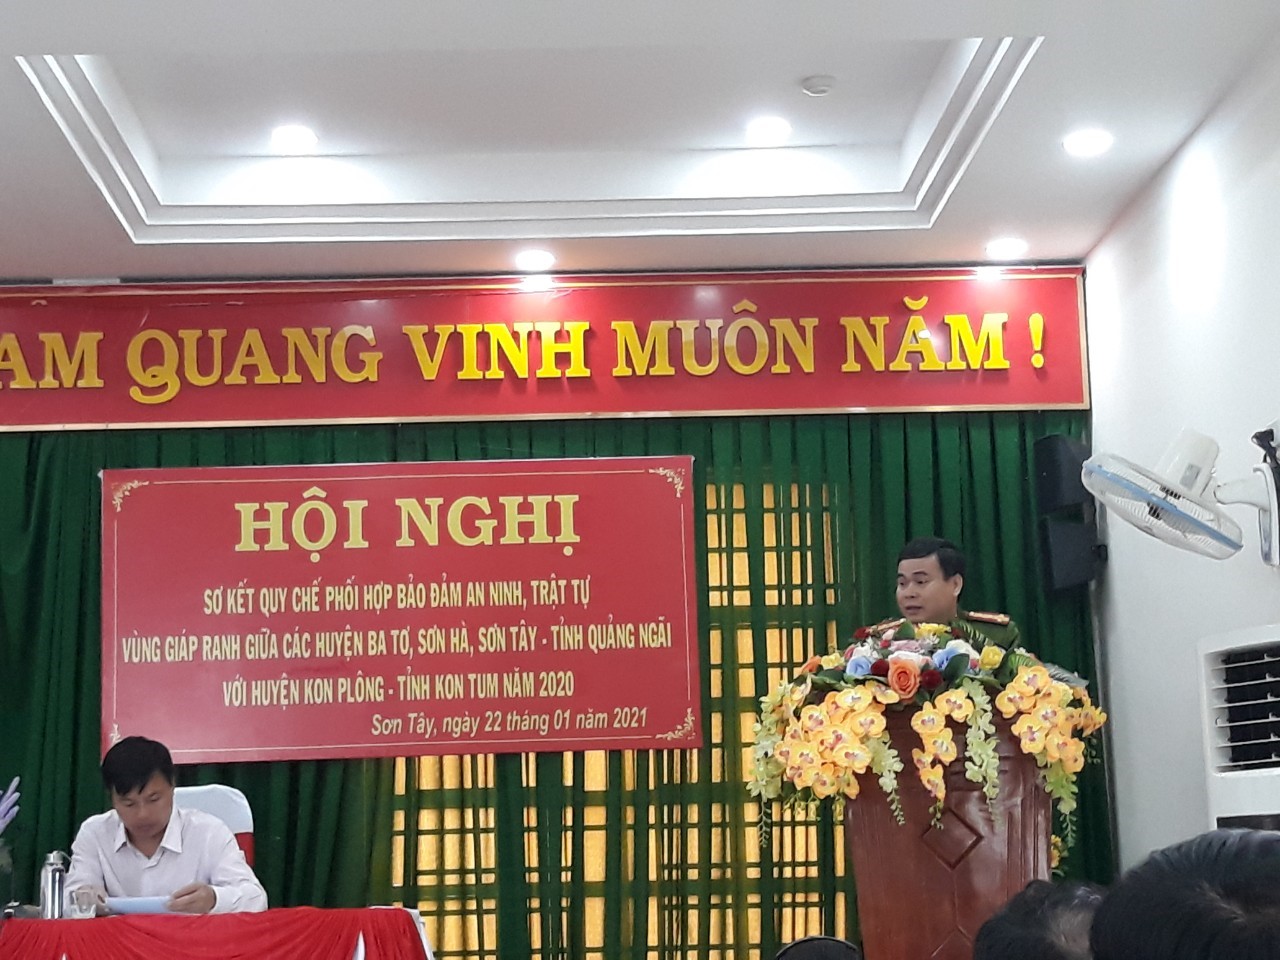 Đồng chí Đại tá Nguyễn Ngọc Sinh - Phó giám đốc Công an tỉnh Kon Tum phát biểu chỉ đạo tại Hội nghị sơ kết quy chế phối hợp vùng giáp ranh giữa  hai tỉnh Quảng Ngãi – Kon Tum năm 2020